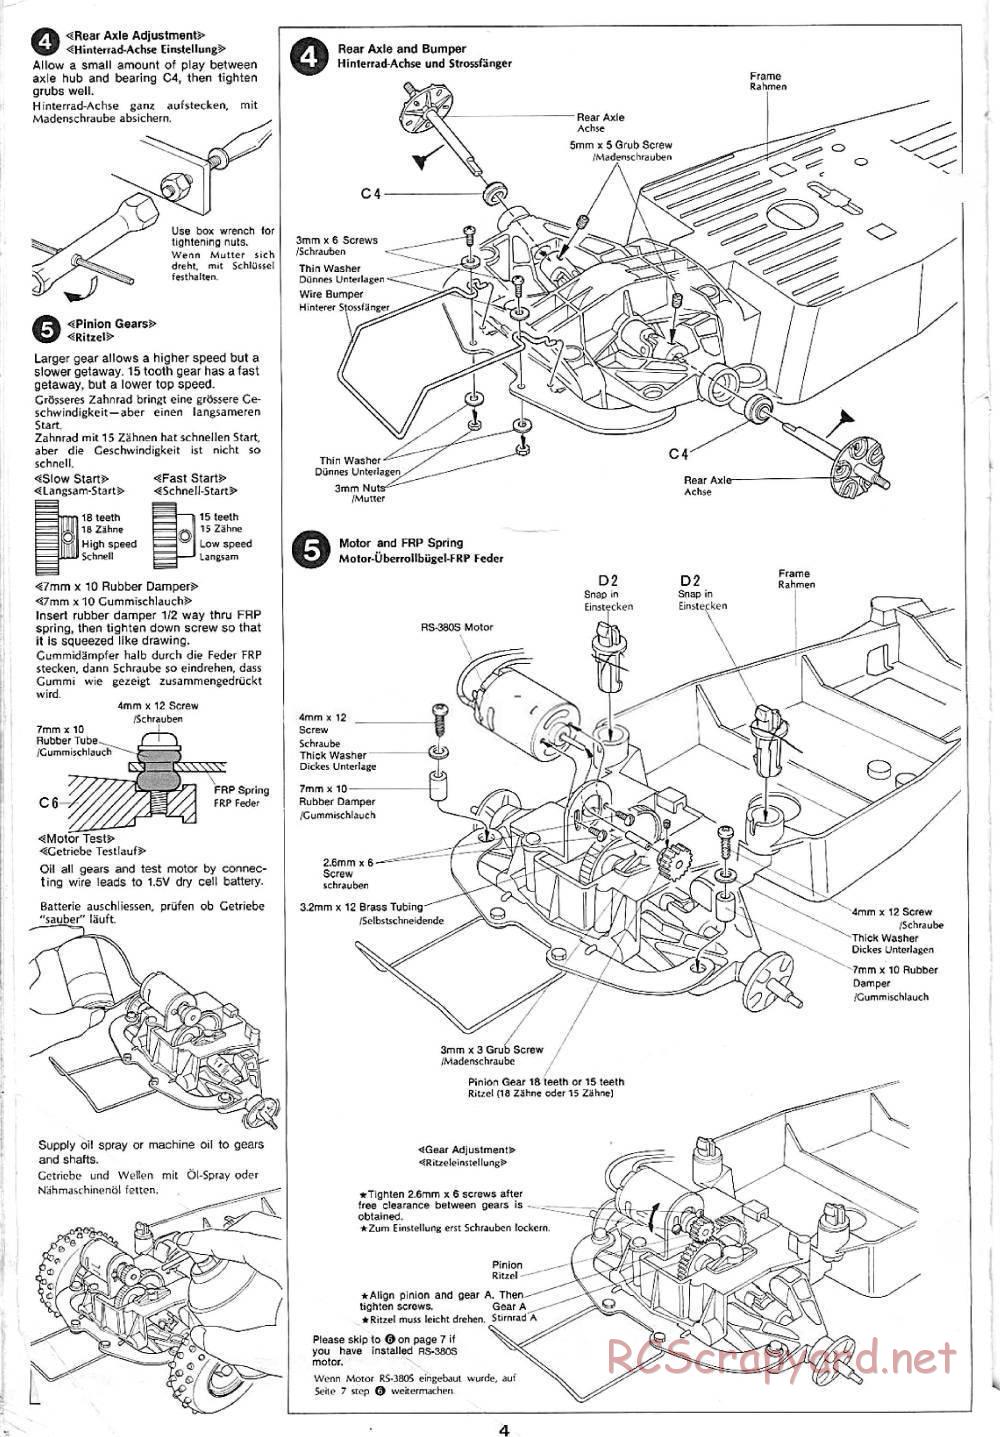 Tamiya - Sand Rover - 58024 - Manual - Page 4